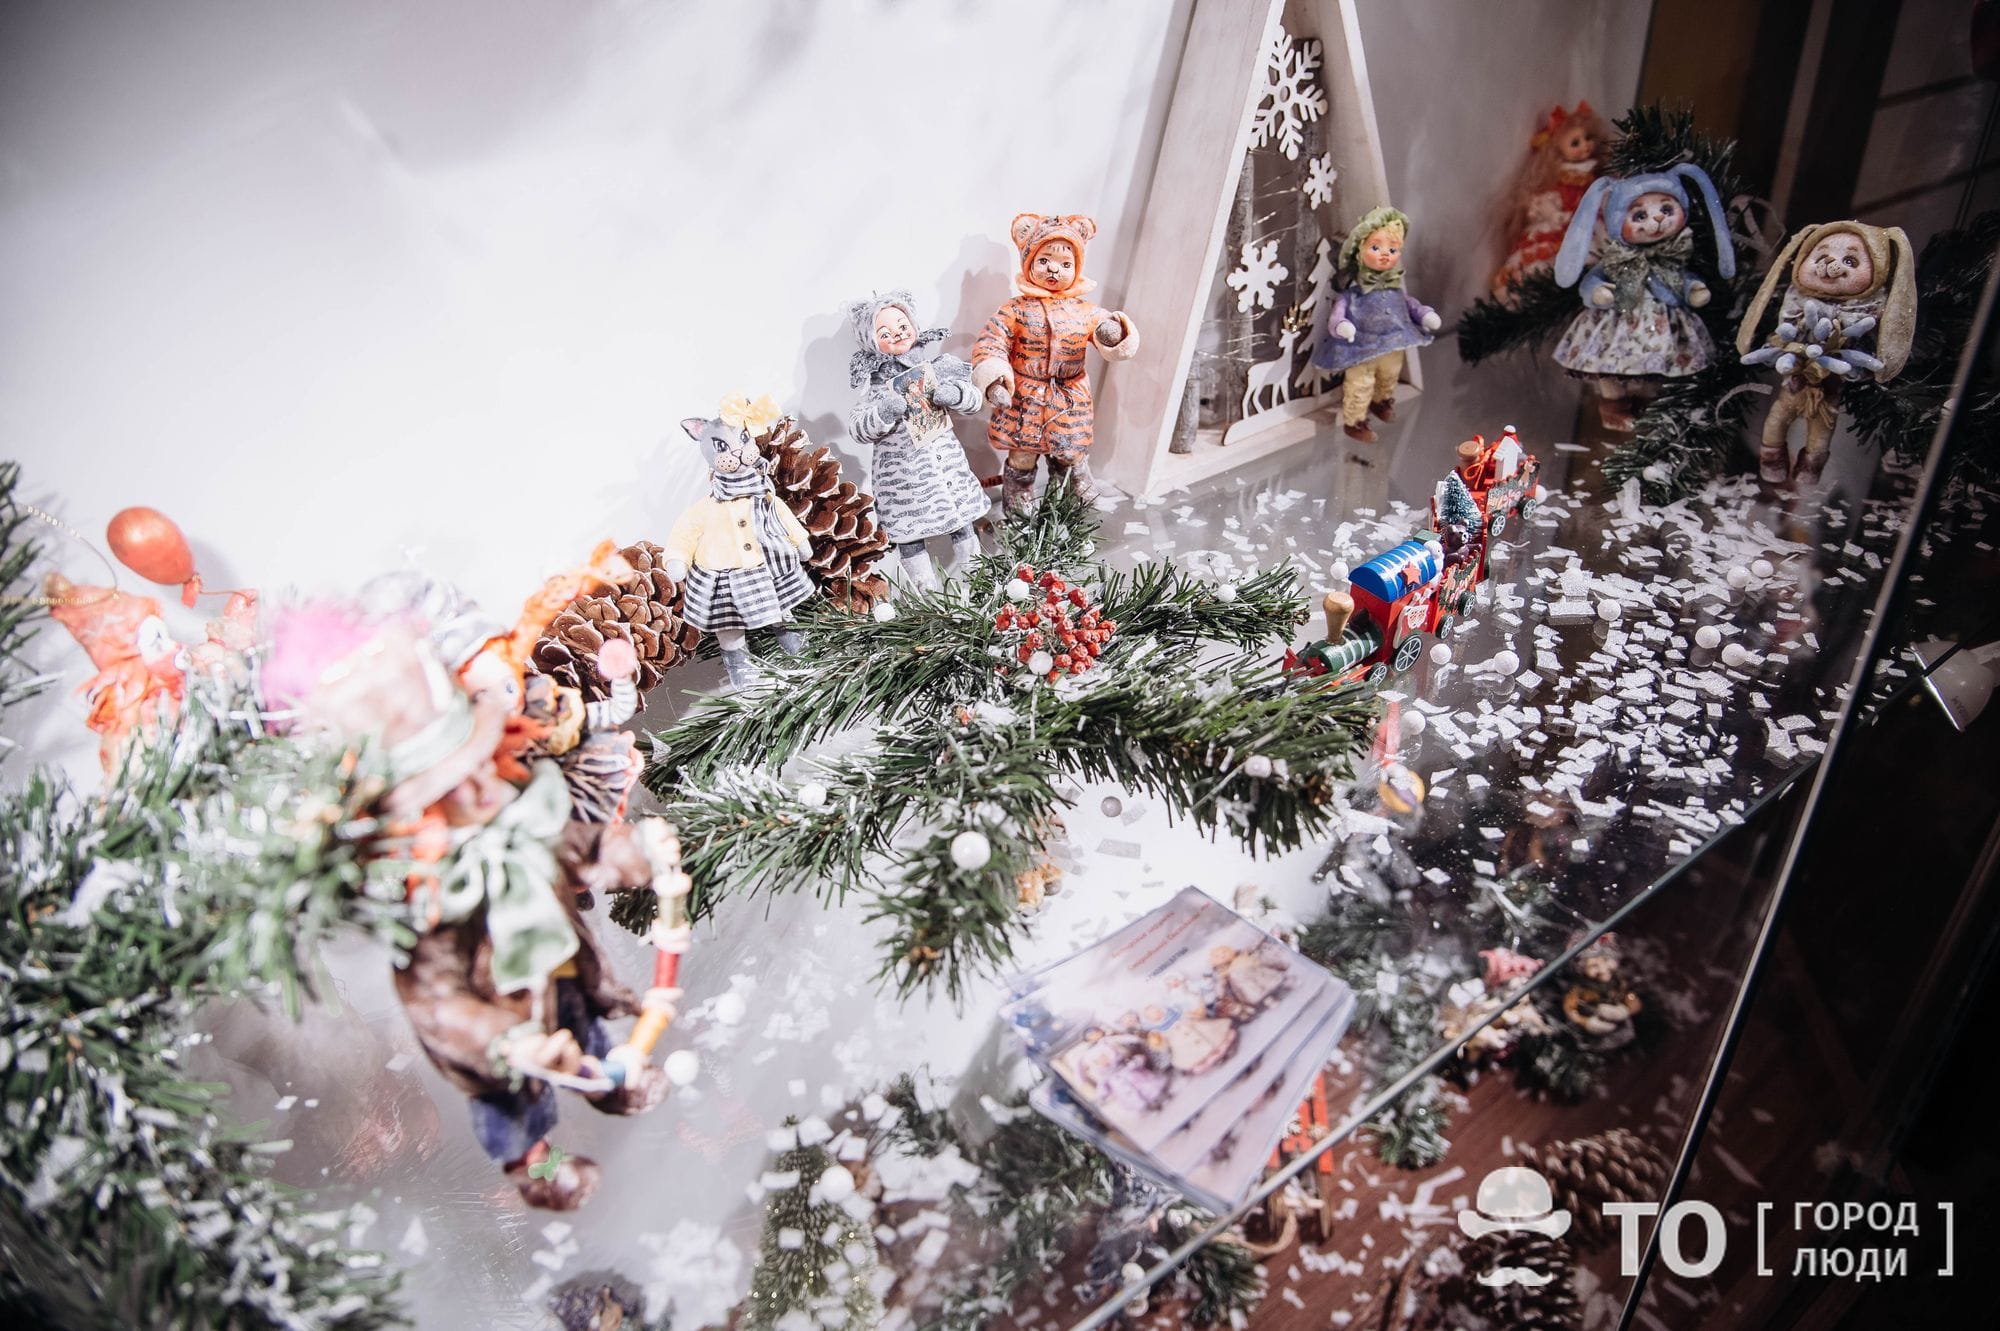 Новый год ❄, Томские новости, дом искусств игрушки новый год выставка авторские работы куда сходить с детьми экспозиция праздники В Томском Доме искусств открылась выставка авторских новогодних игрушек